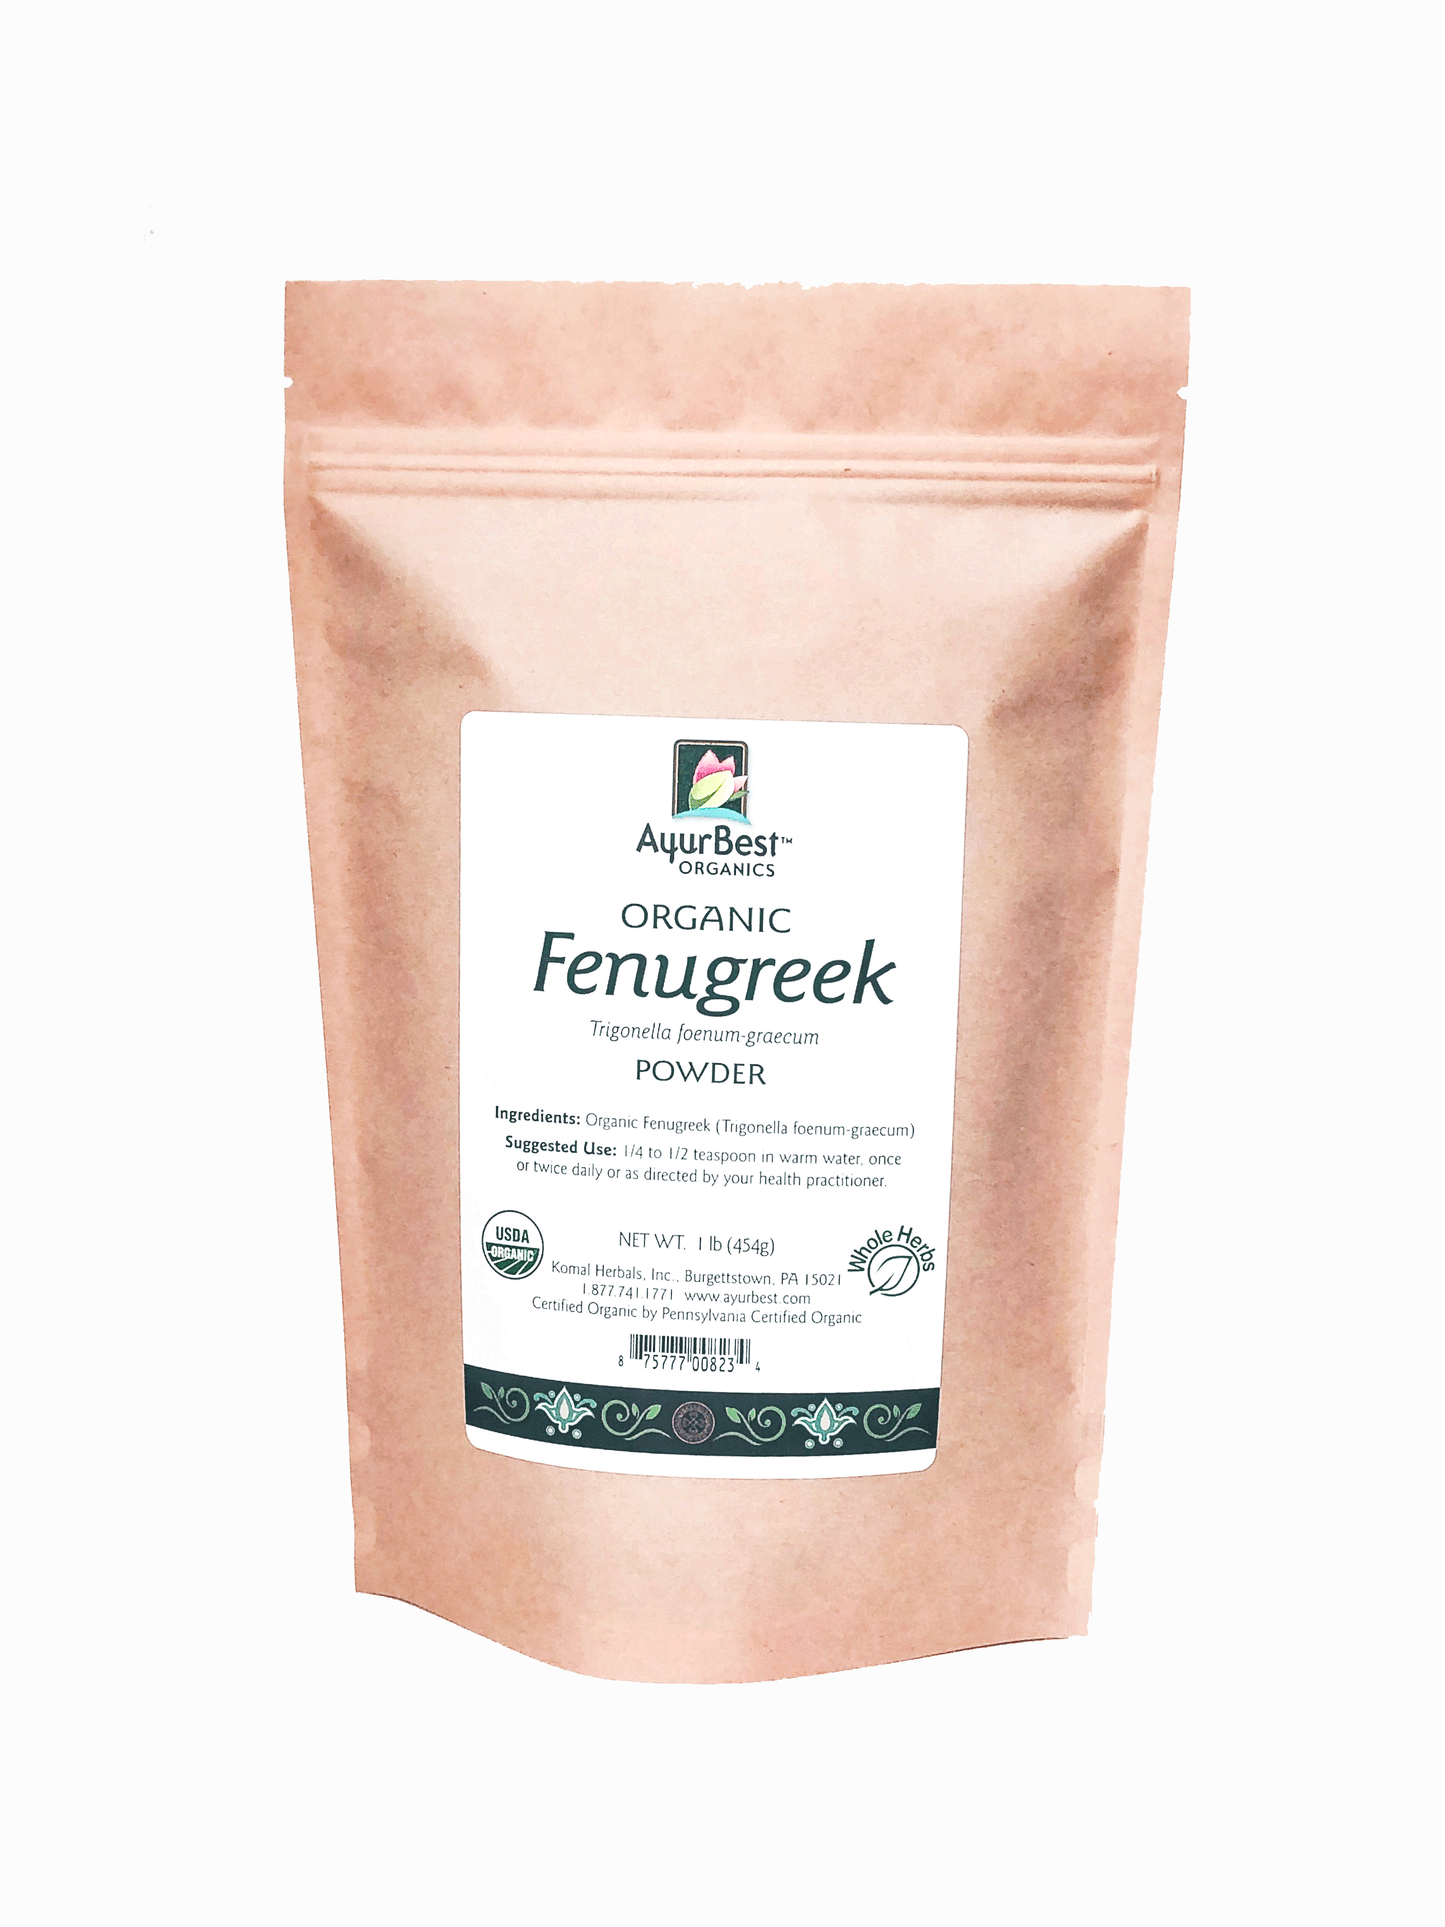 Buy 1lb bulk bags of Organic Fenugreek Seed Powder!